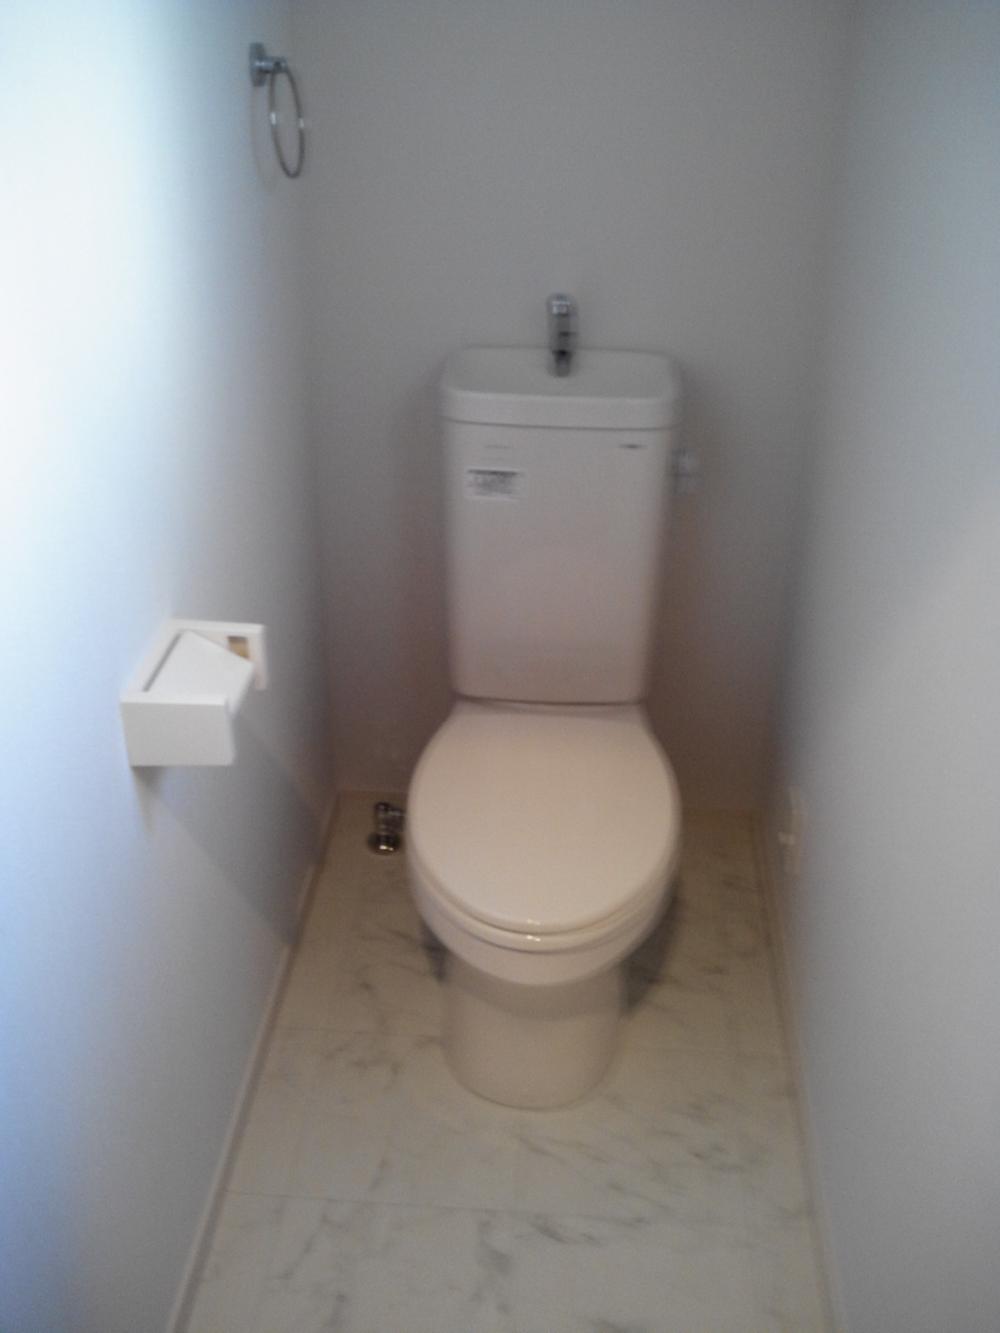 Toilet. Toilet room simple white-collar